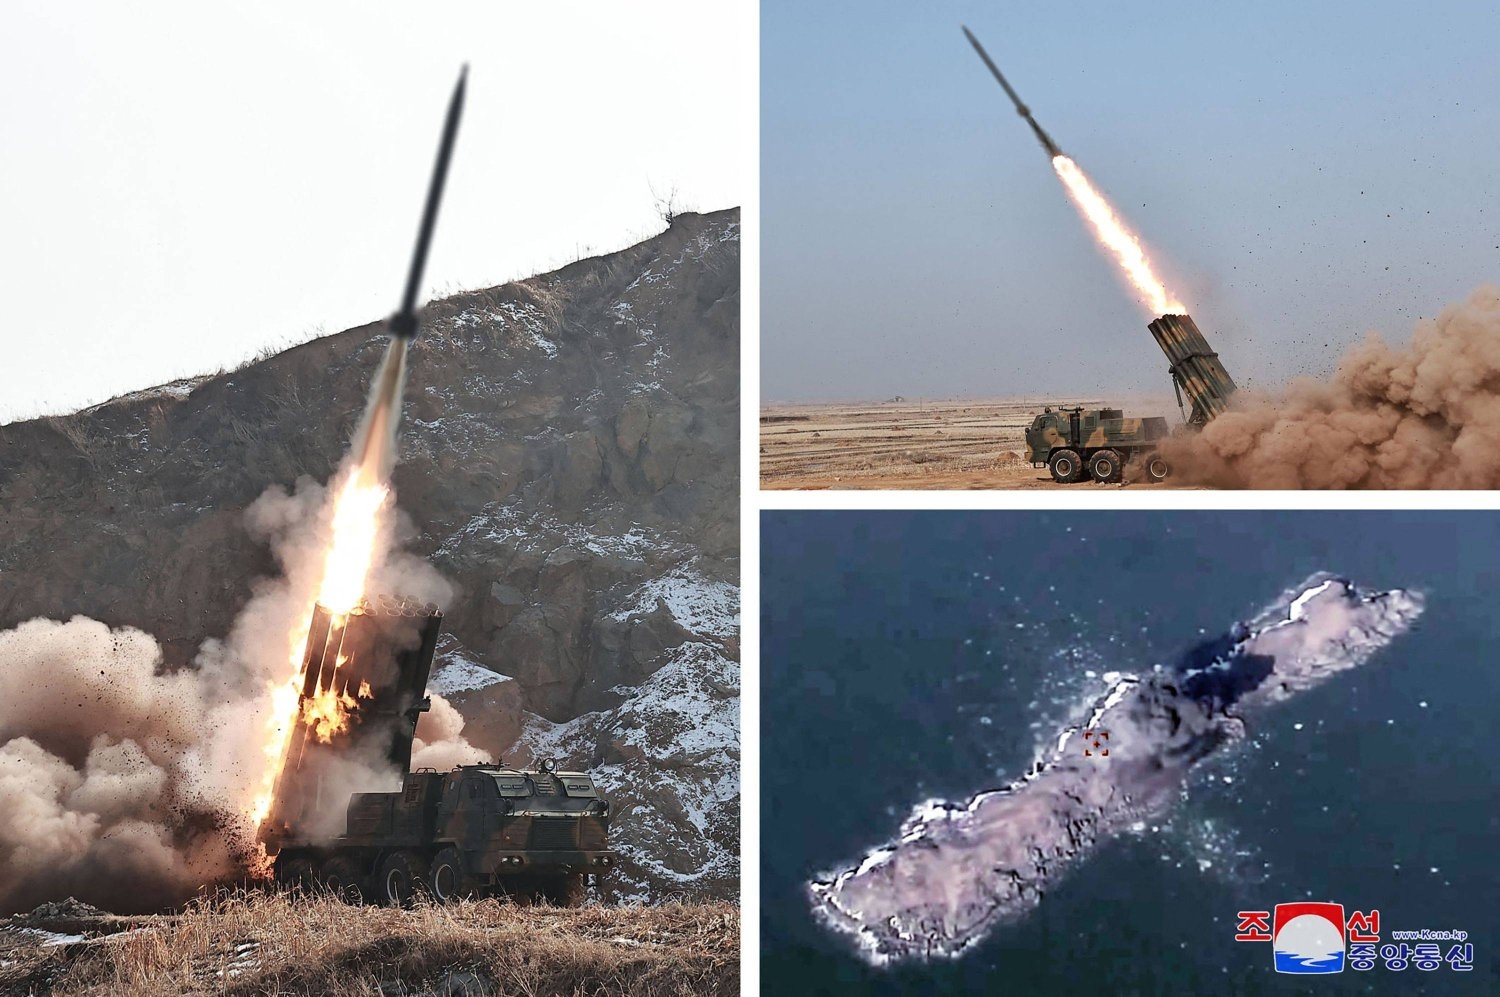 كوريا الشمالية تطلق عدة صواريخ «كروز» قبالة سواحلها الشرقية